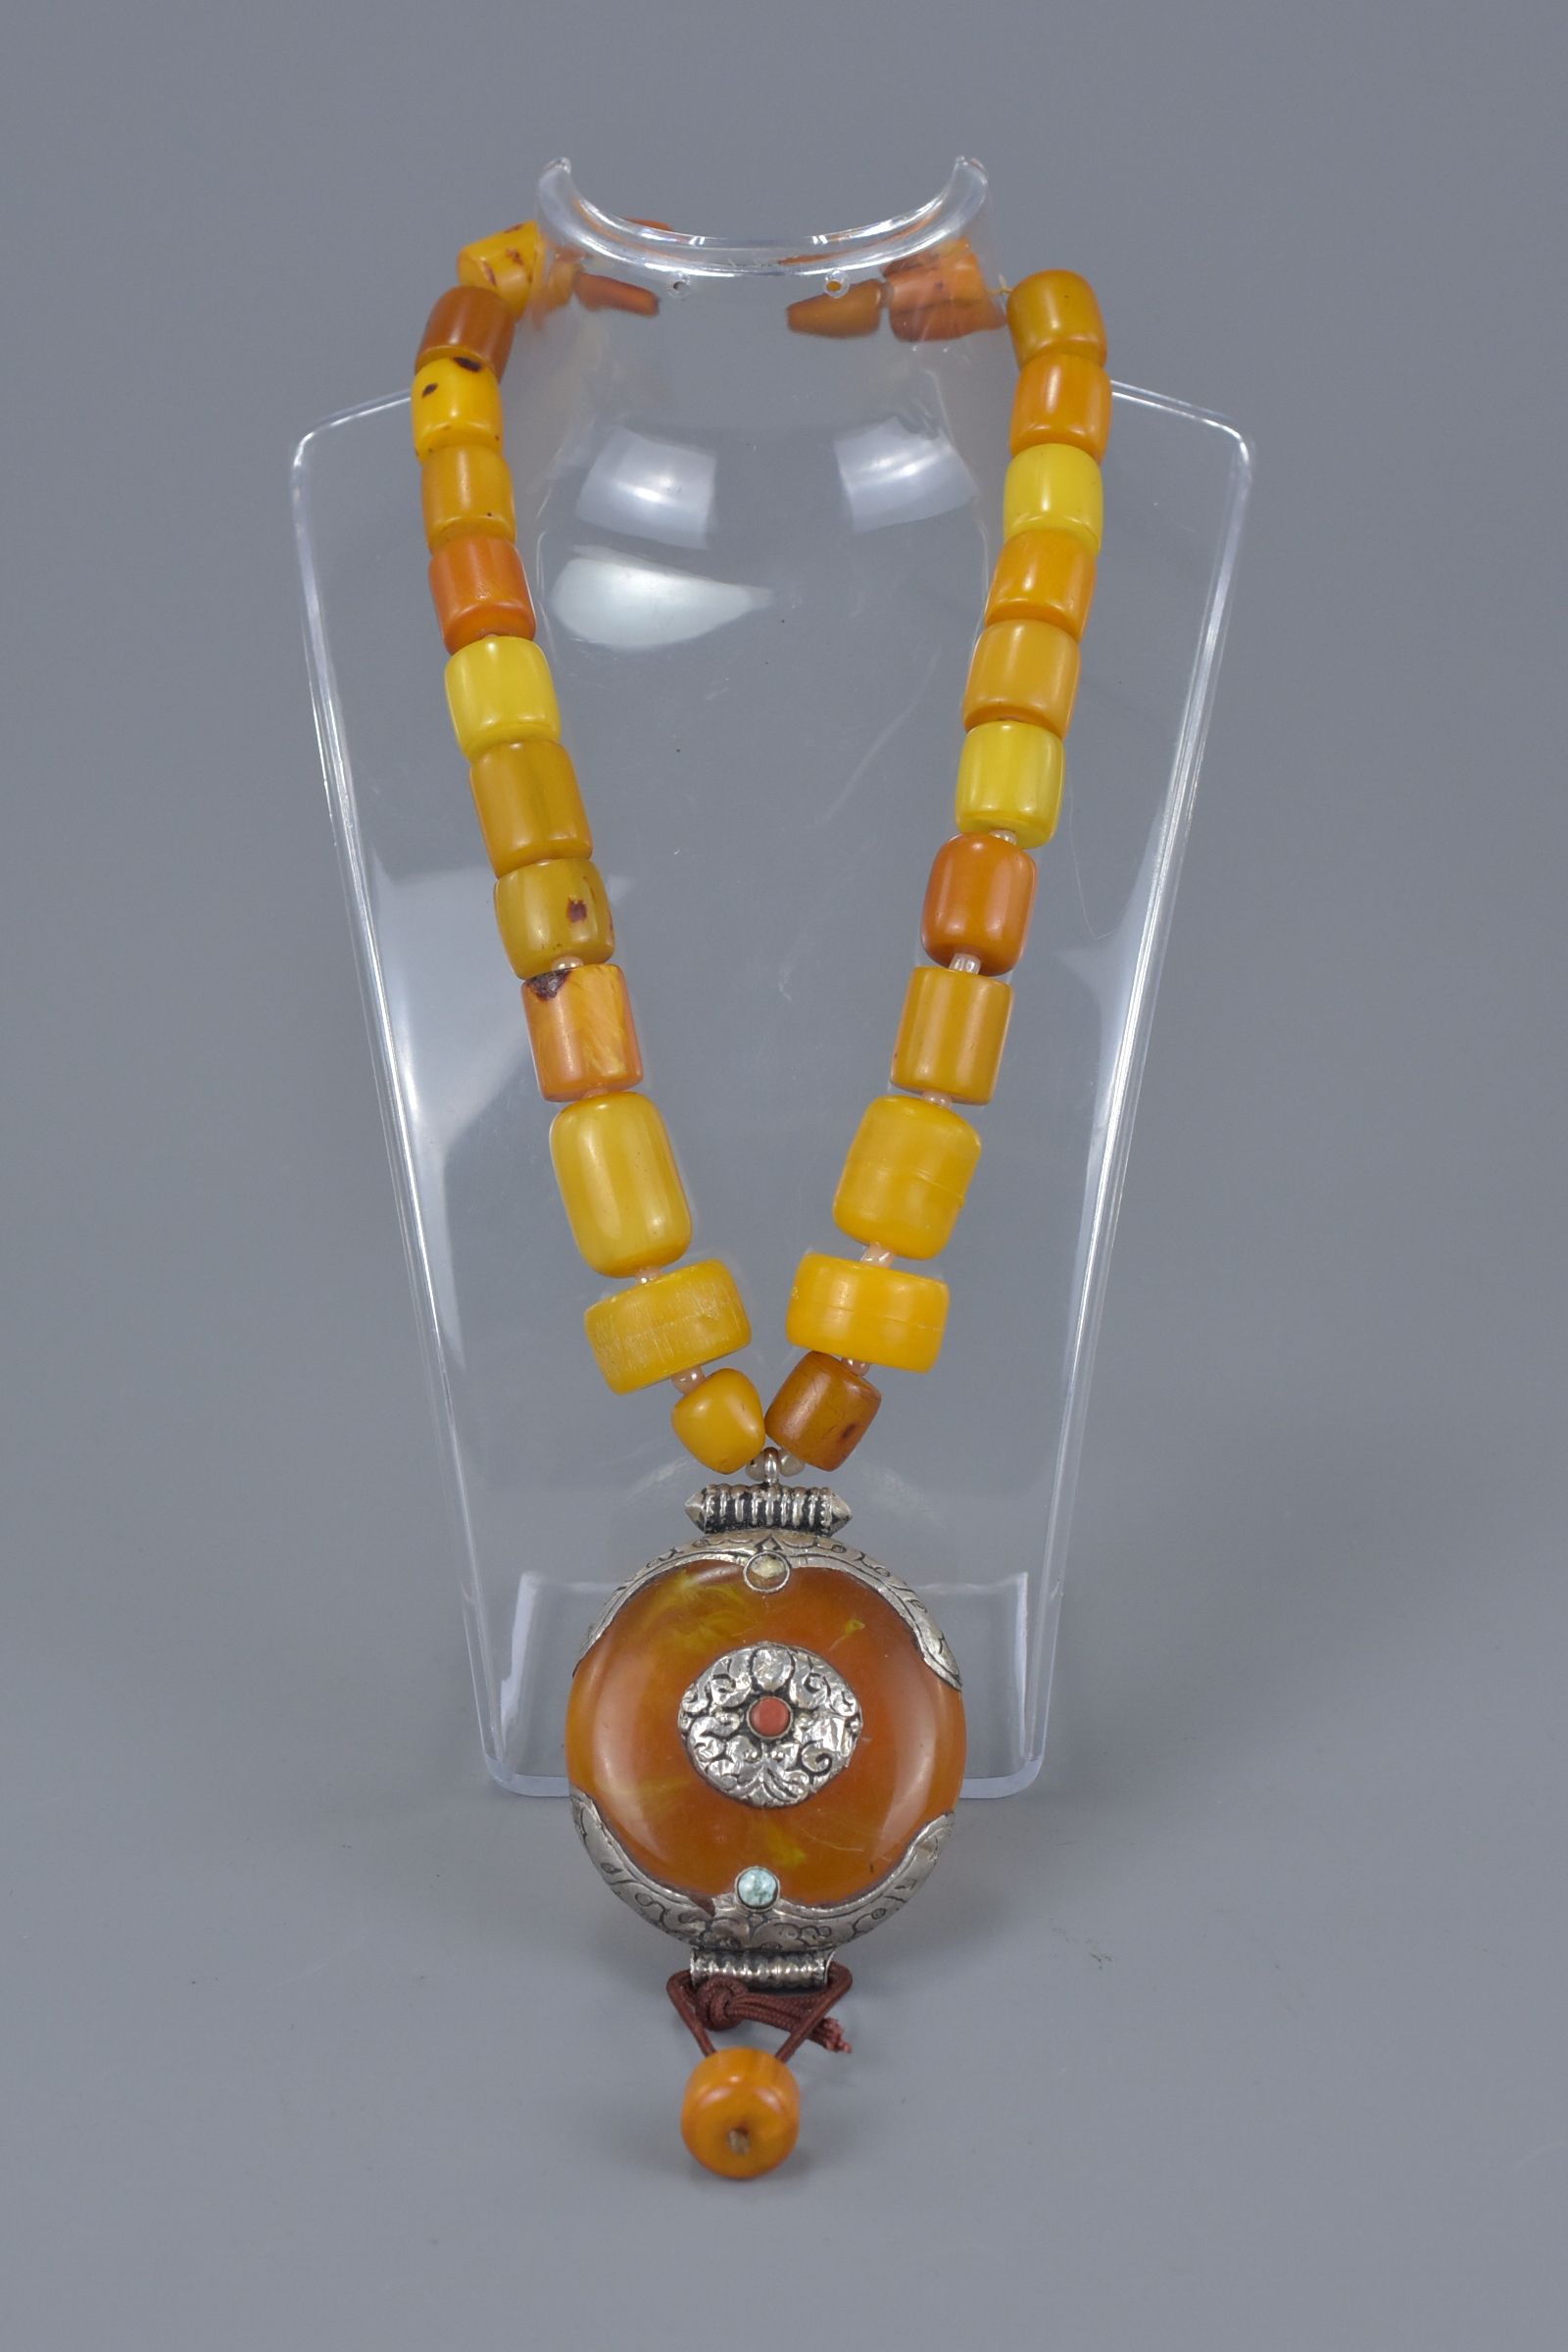 Necklace of Twenty Six Cylindrical Amber Beads - Image 3 of 4